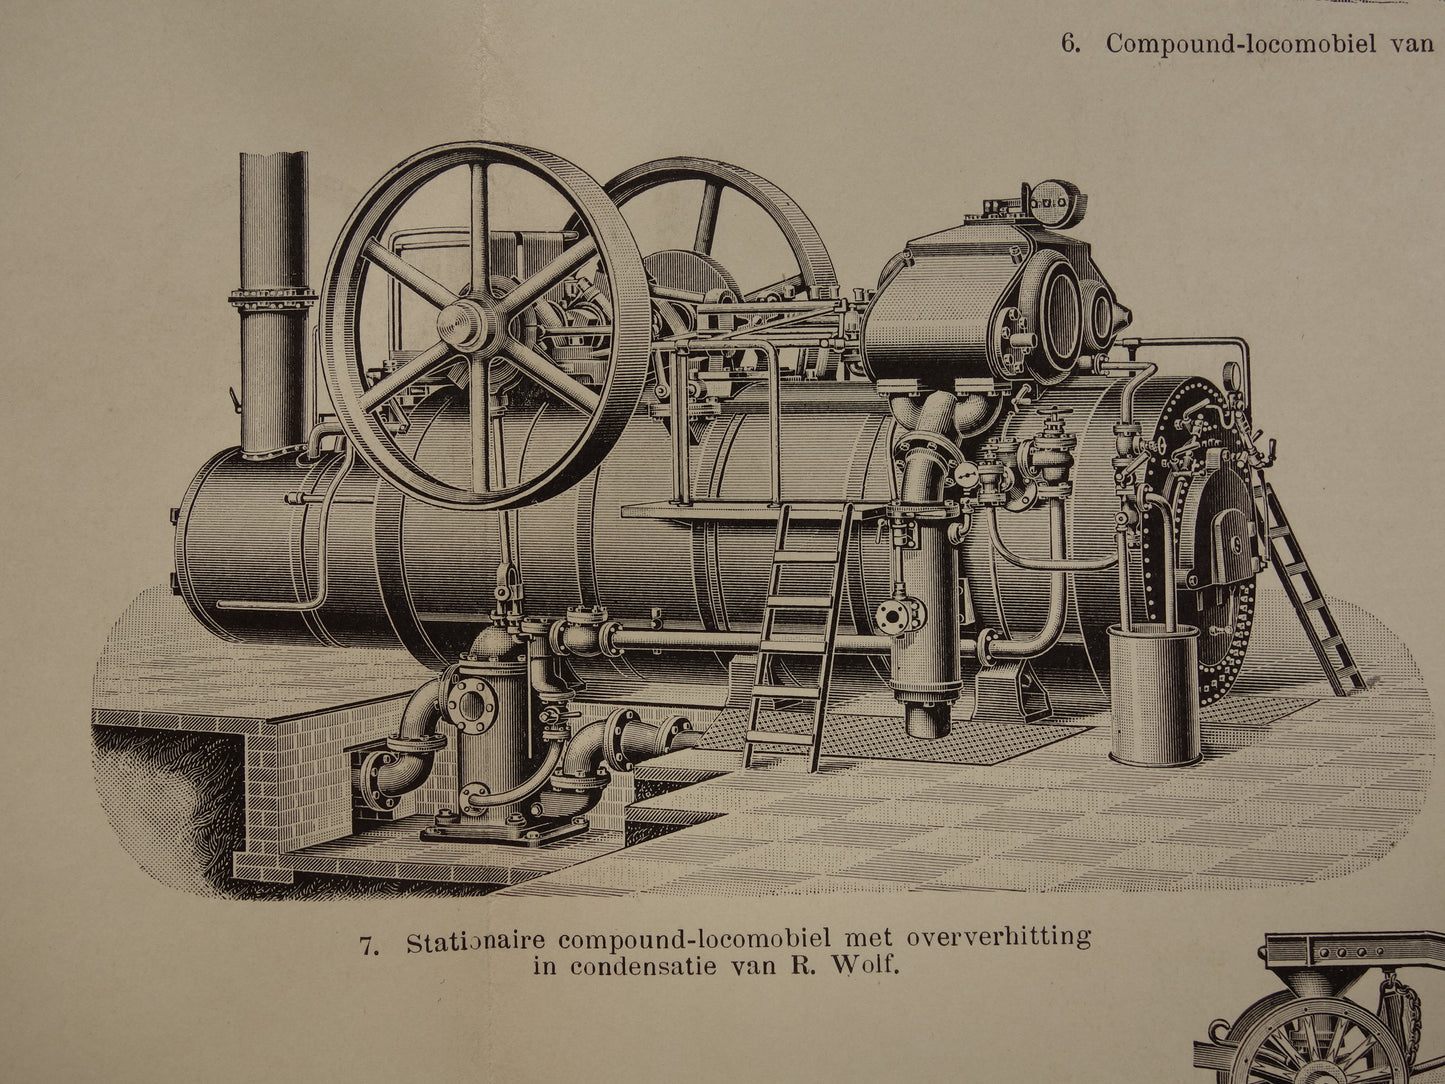 TRACTIEMACHINE oude technologie prent uit het jaar 1909 over de mobiele stoommachine originele antieke techniek illustratie - vintage prints locomobiel